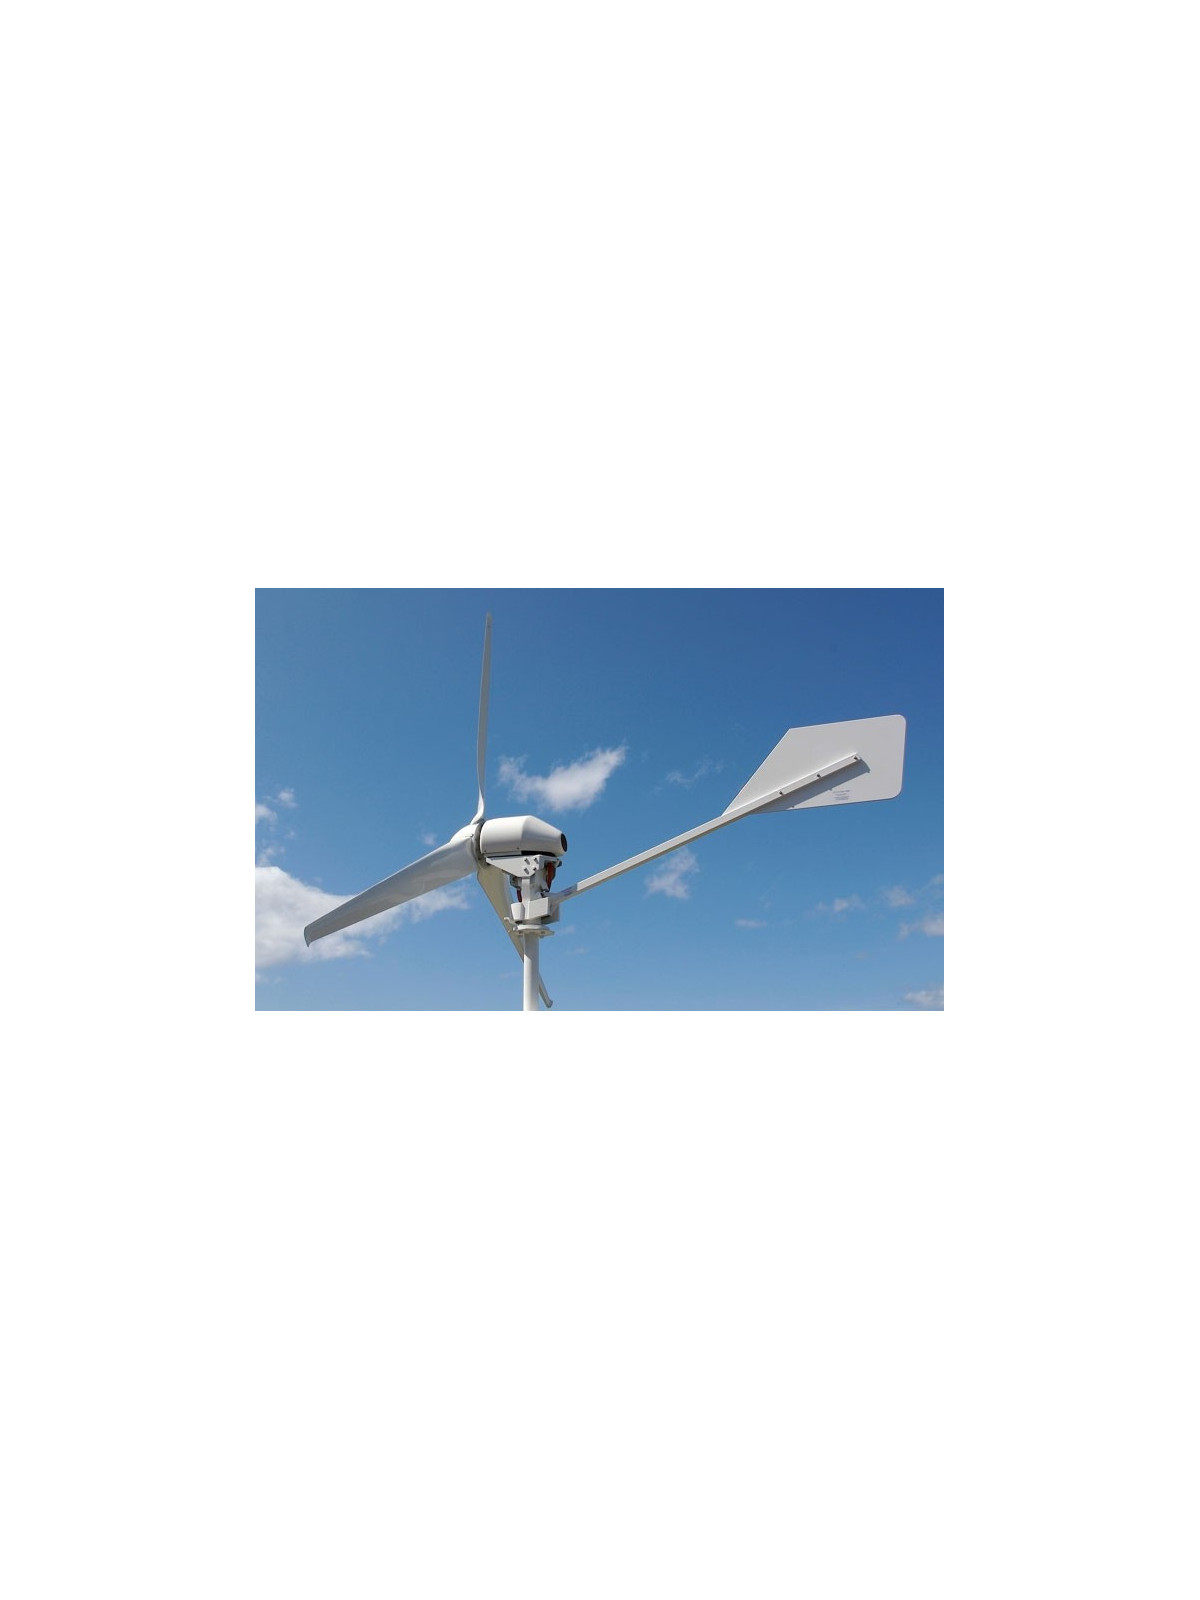 ANTARIS 7.5 kW – BRAUN Windturbinen GmbH